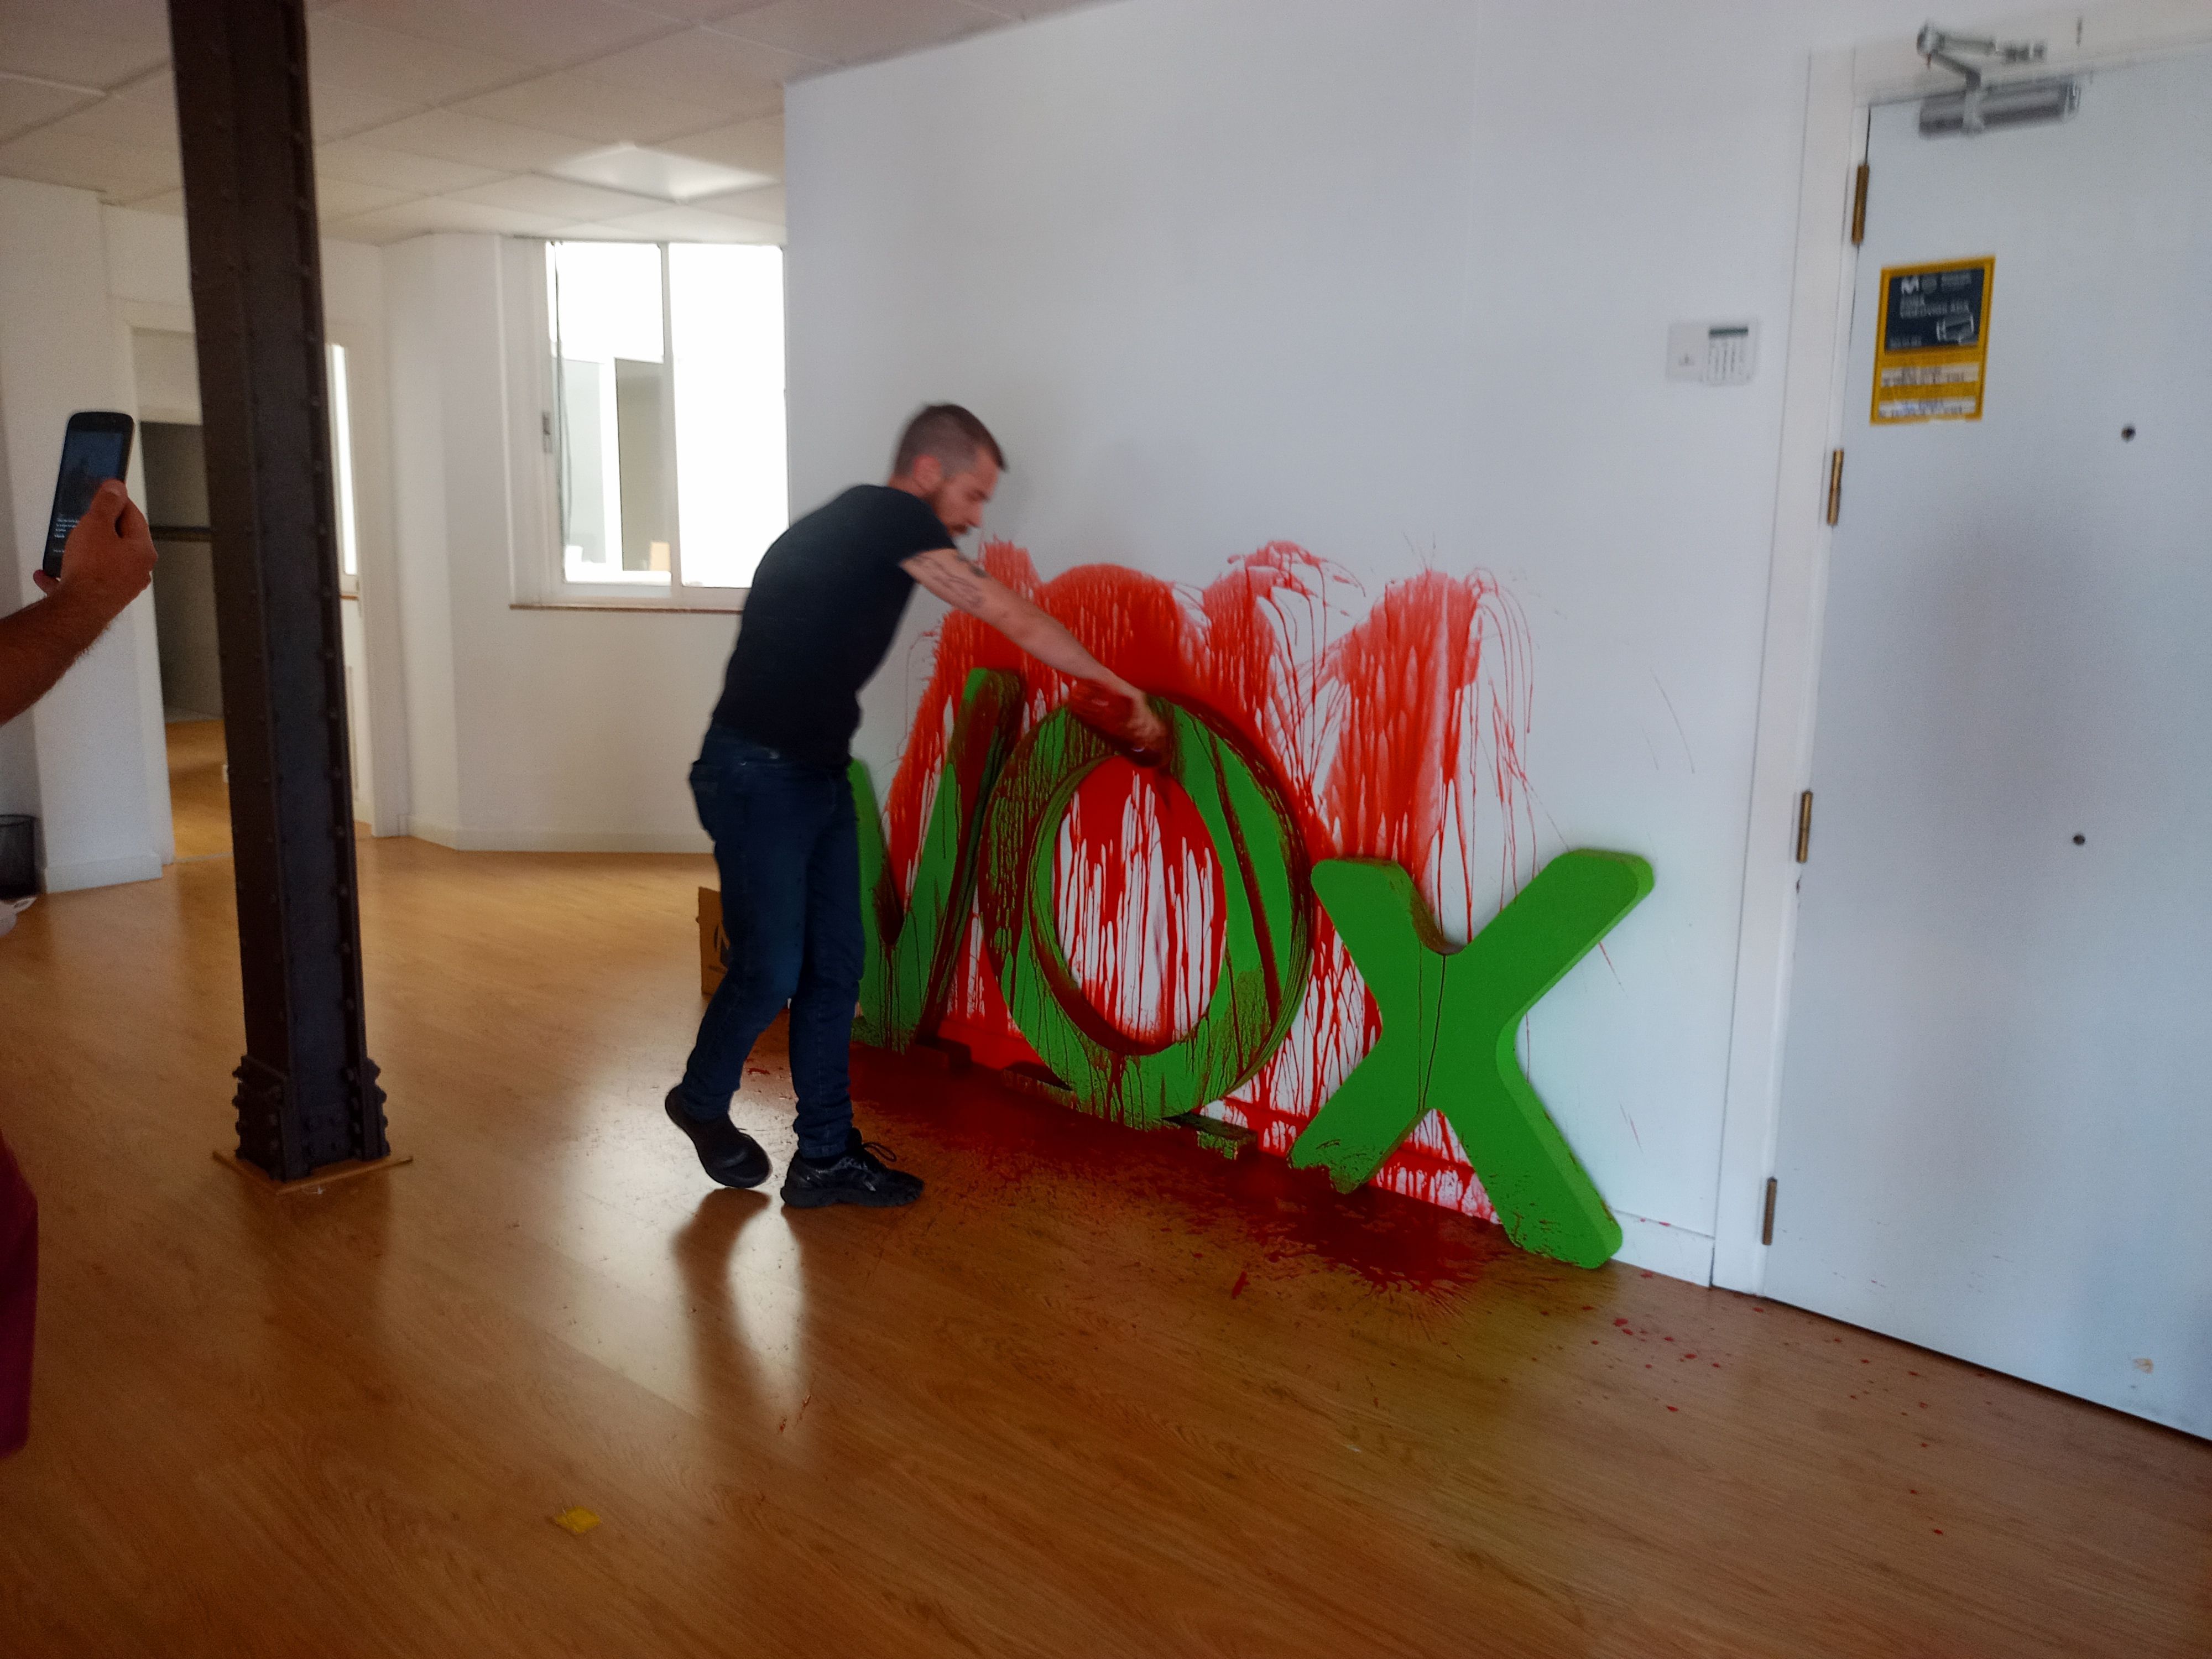 Uno de los activistas pintando la sede de Vox